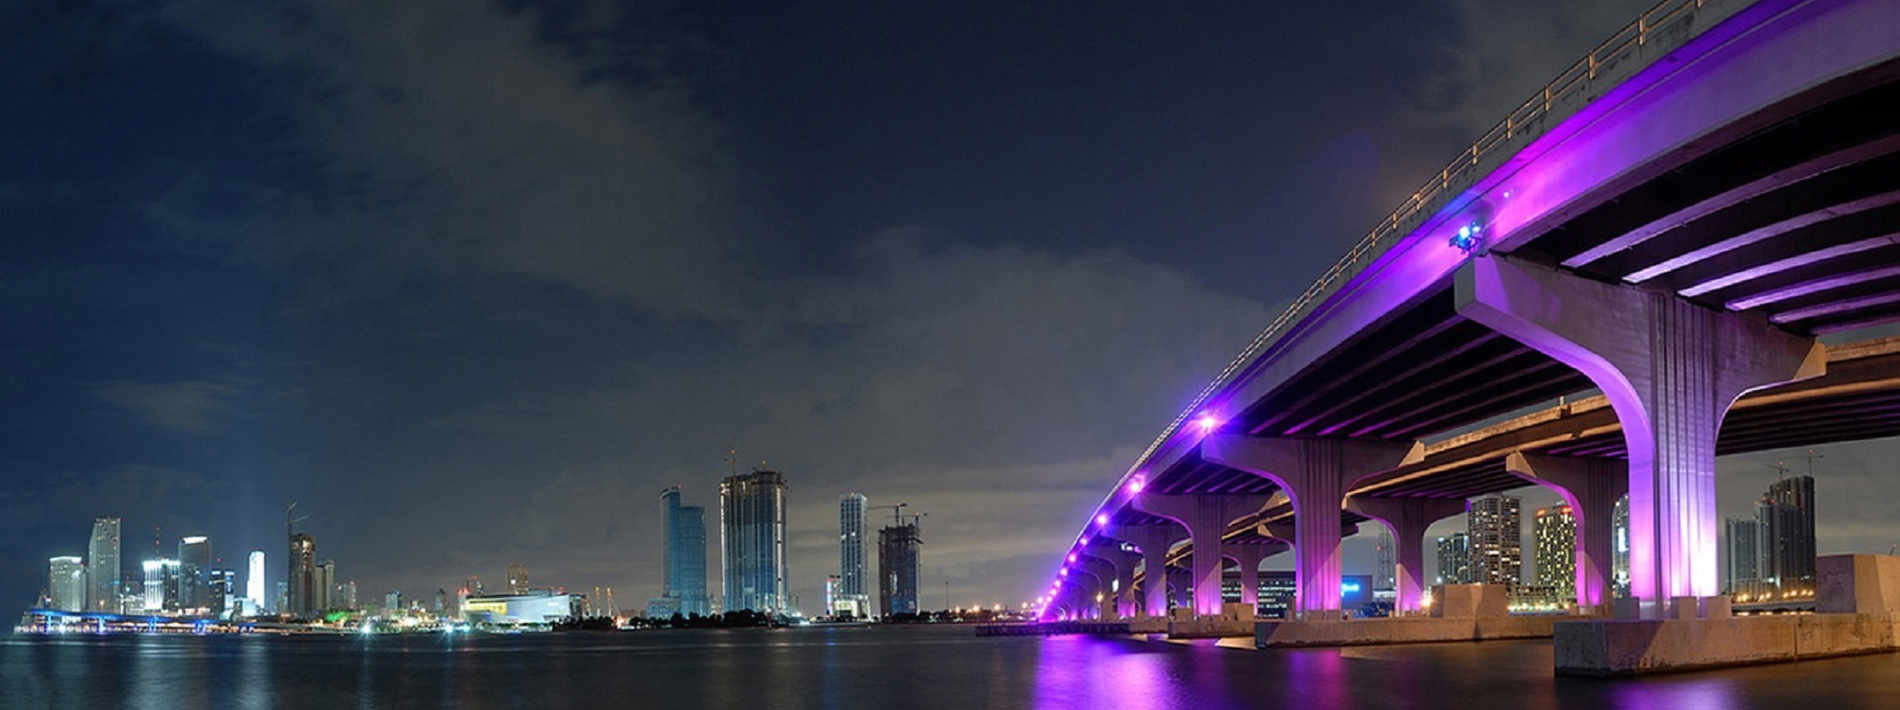 night skyline of Miami